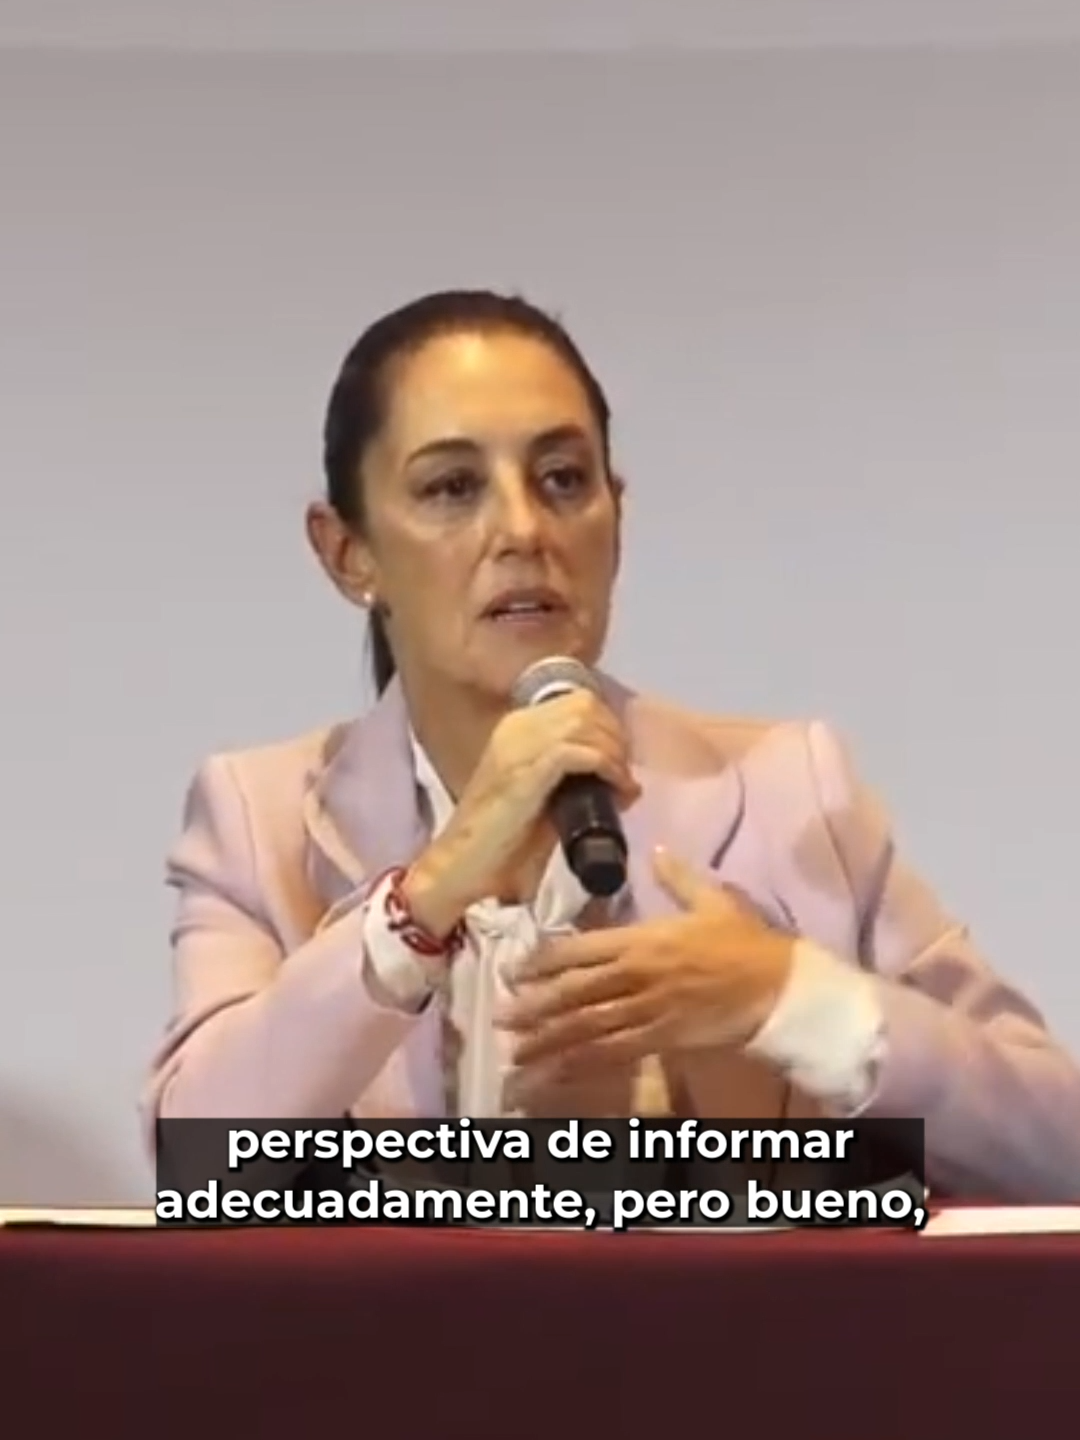 Estamos en contra de la censura, los medios tienen la responsabilidad de informar: Claudia Sheinbaum. #Latinus #InformaciónParaTi